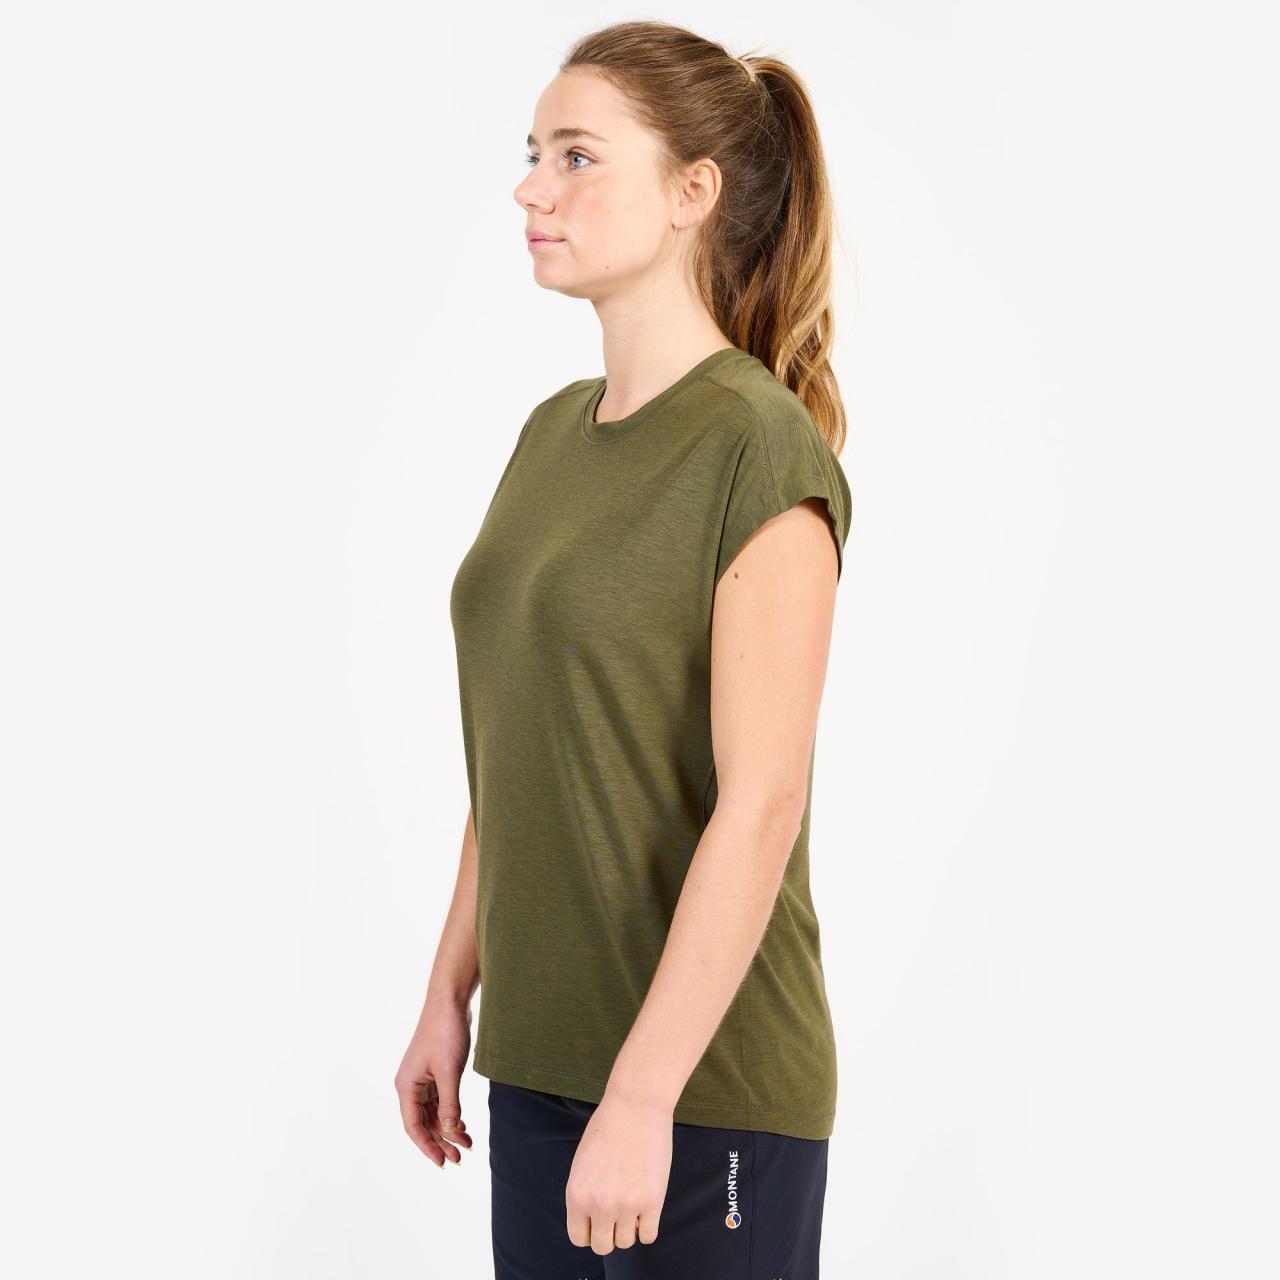 FEM MIRA T-SHIRT-KELP GREEN-UK10/S dámské tričko zelené